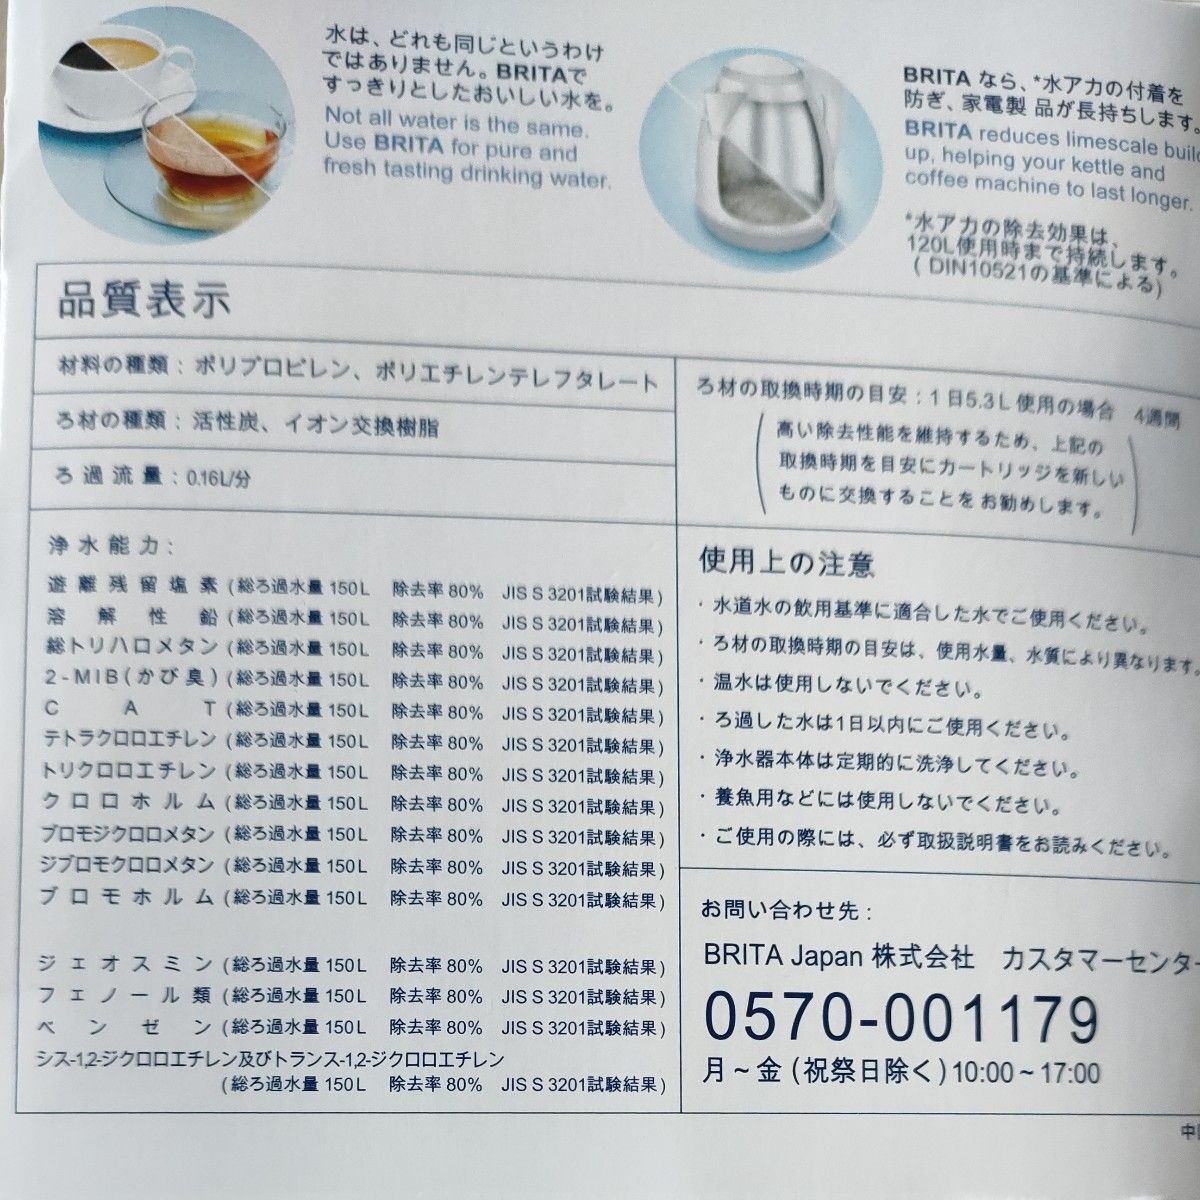 ５個セット＋液晶インジケータ　◆ブリタBRITA Maxtra 交換用カートリッジ マクストラ ポット型浄水器　　日本正規品